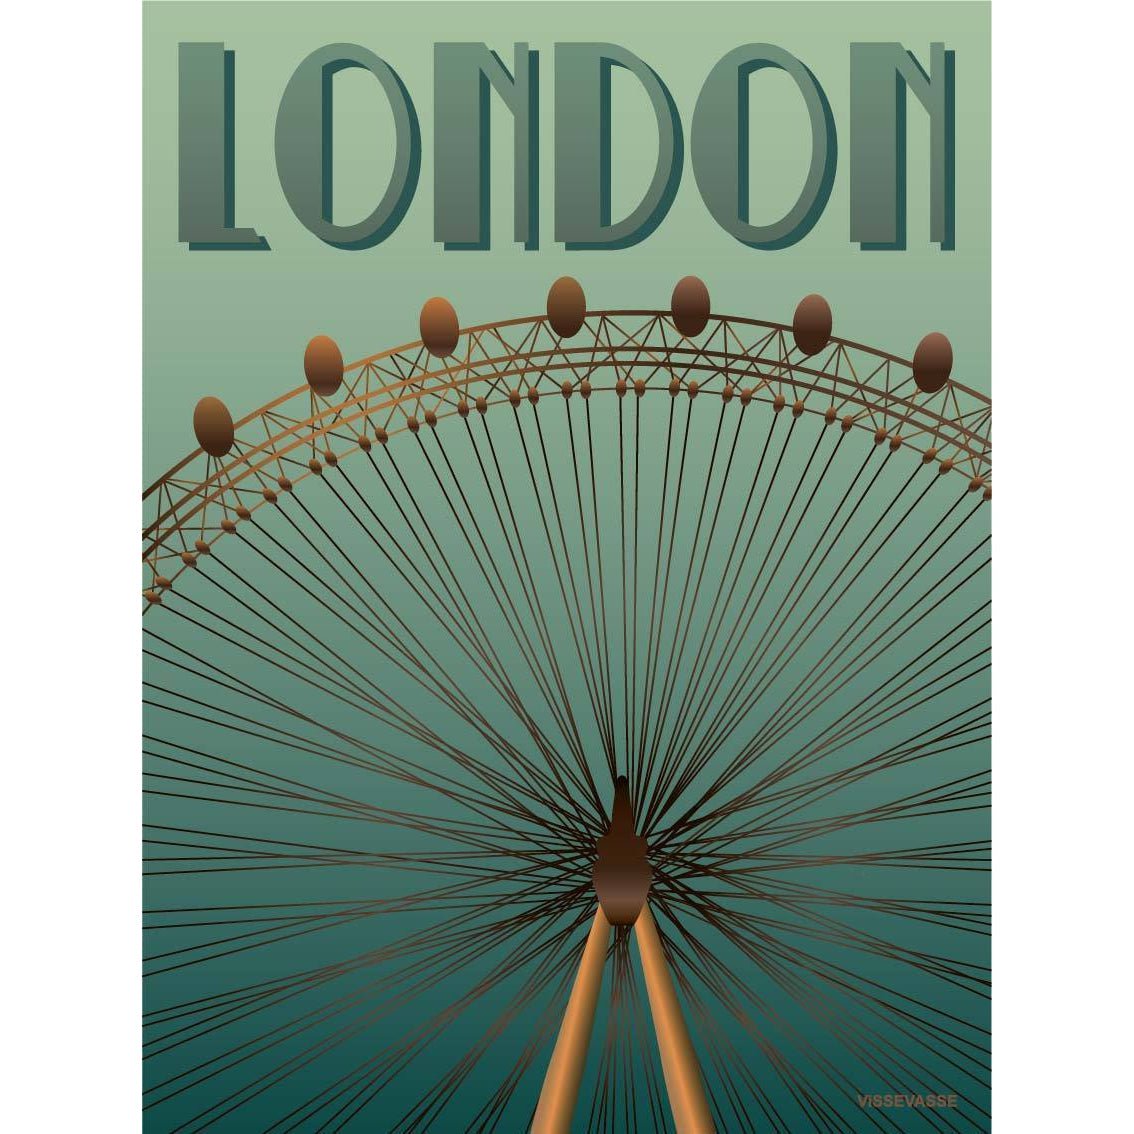 Affiche Vissevasse London Eye, 15 x 21 cm